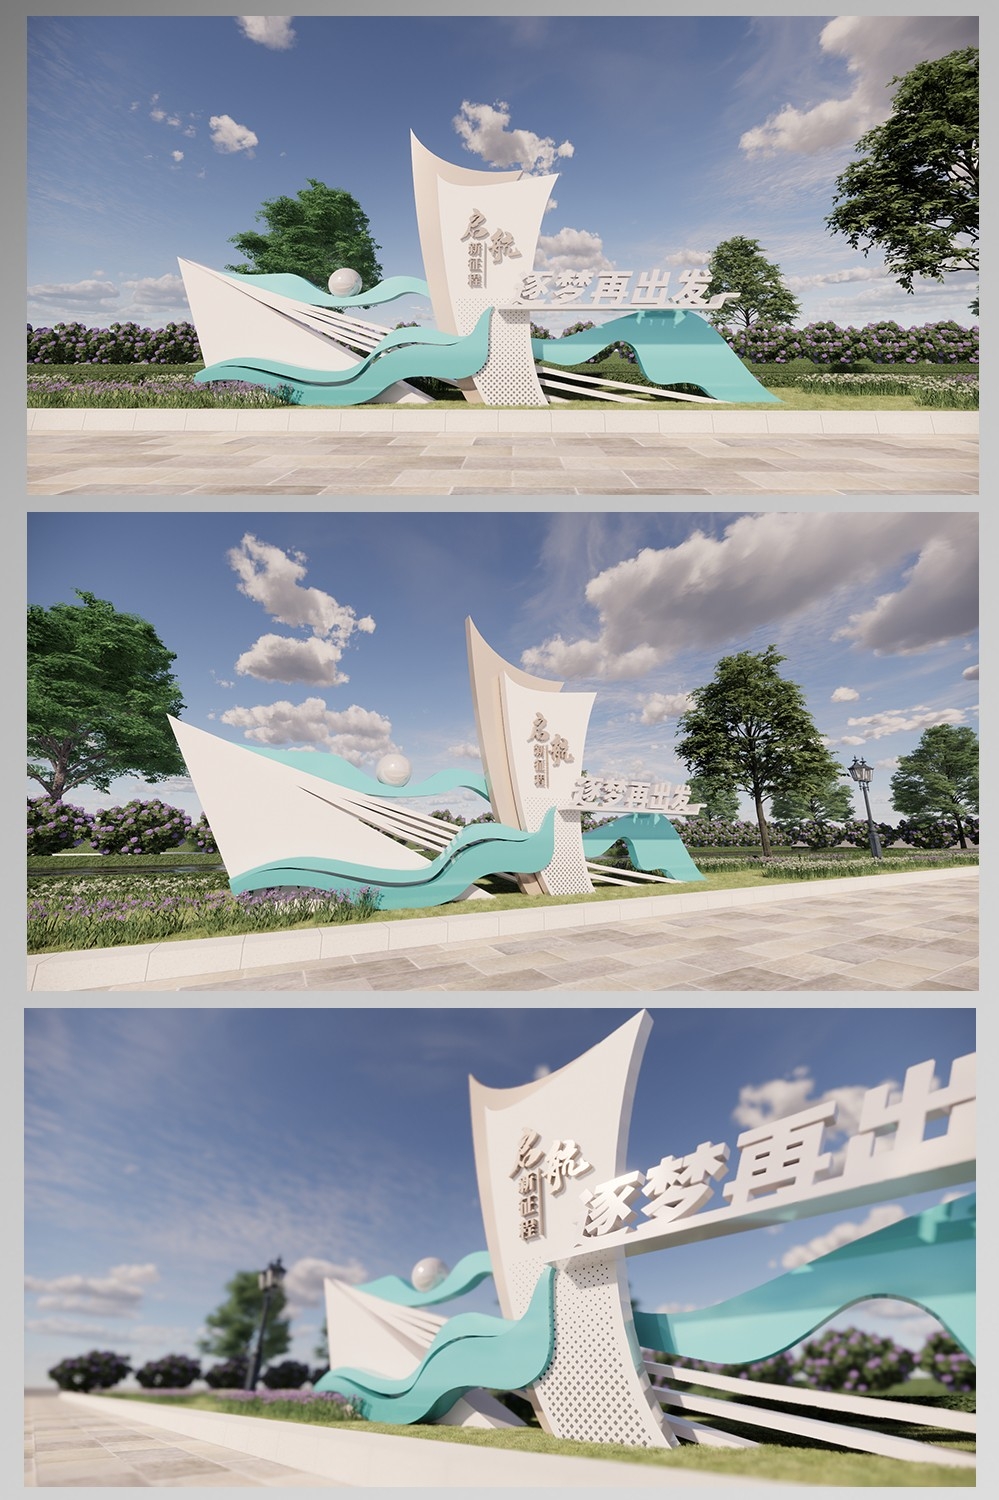 创意大气户外广场公园社区文明城市雕塑小品景观设计CDR素材模板